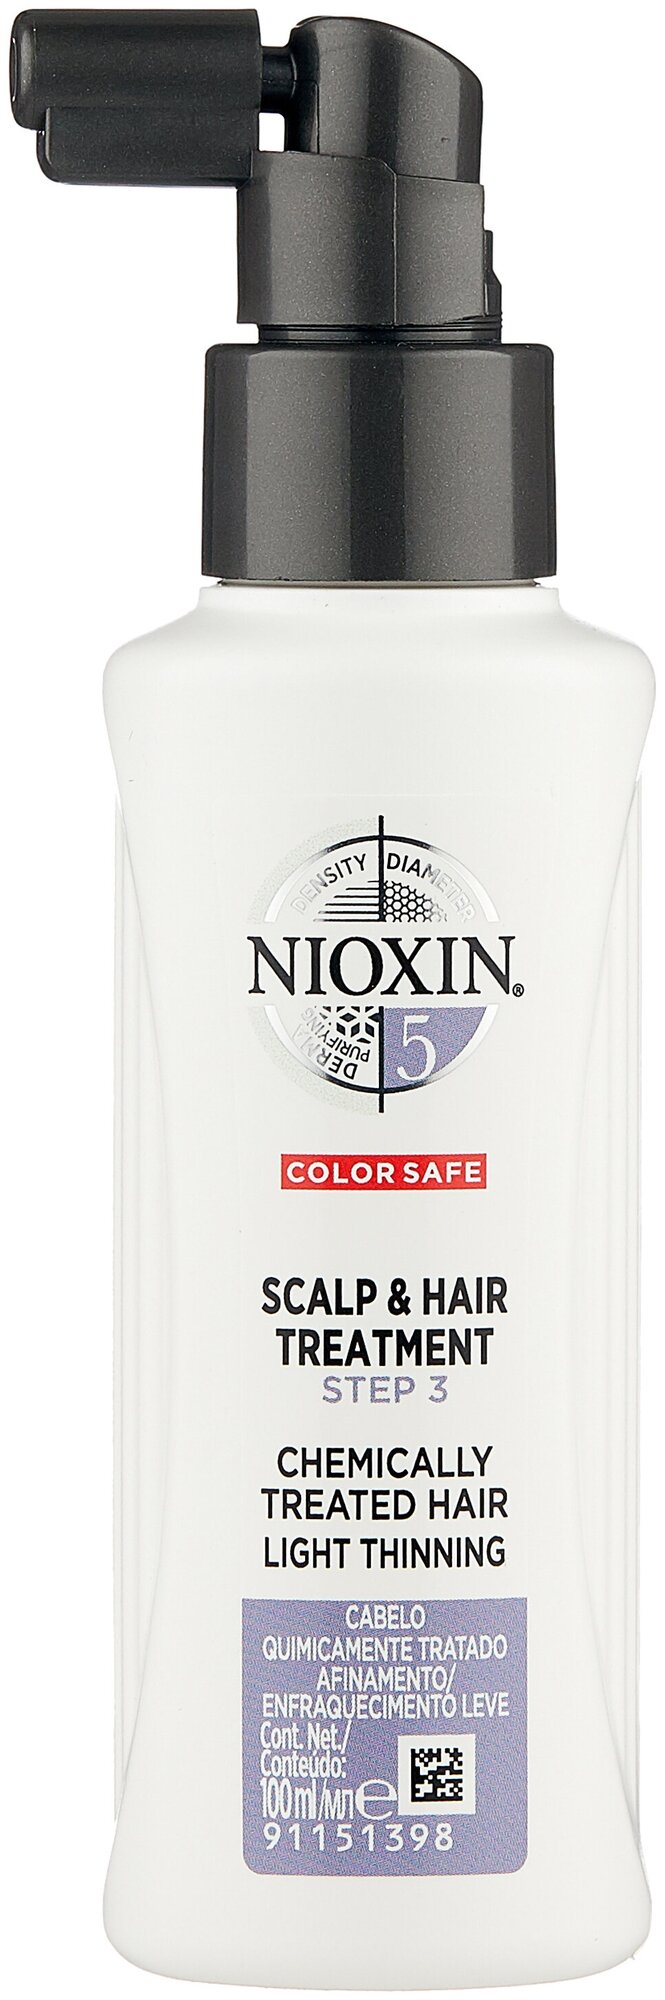 Nioxin System 5 Питательная маска для кожи головы, 100 мл, спрей